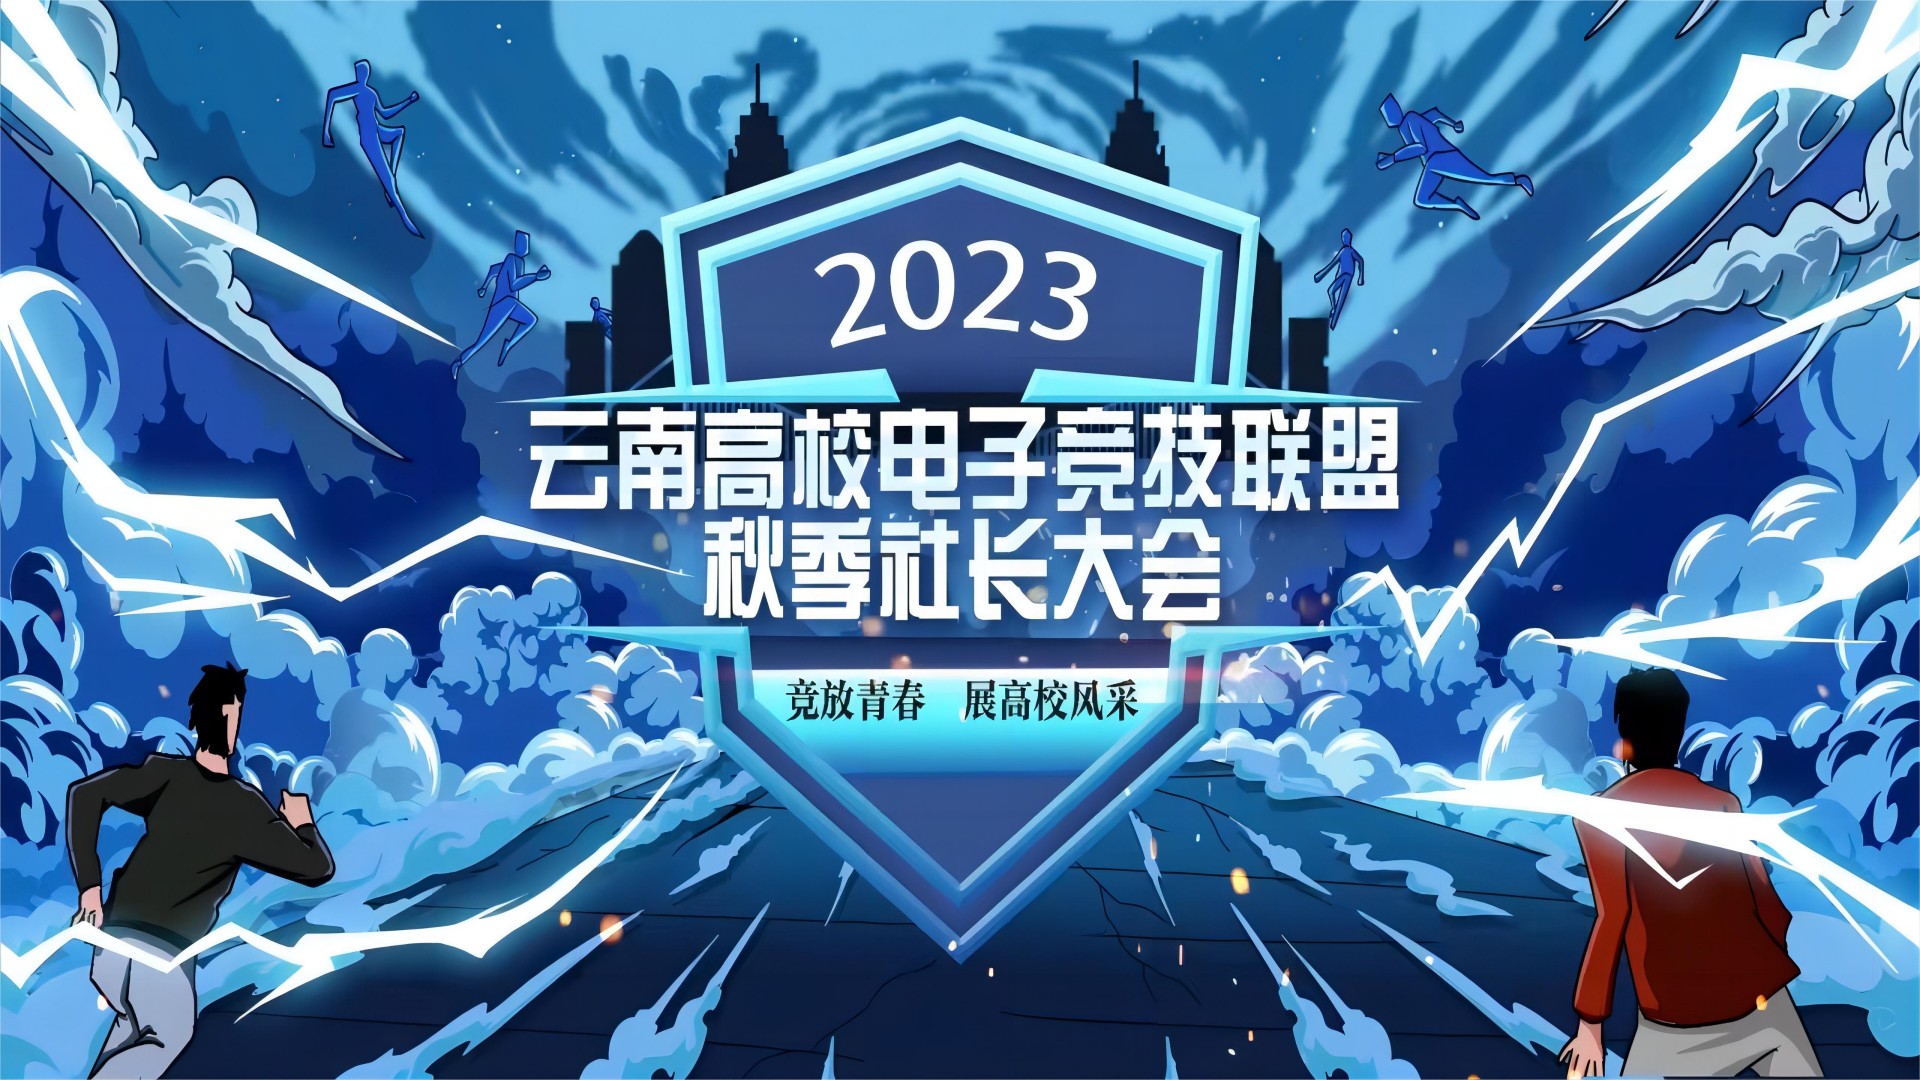 2023云南高校电子竞技联盟秋季社长大会圆满闭幕